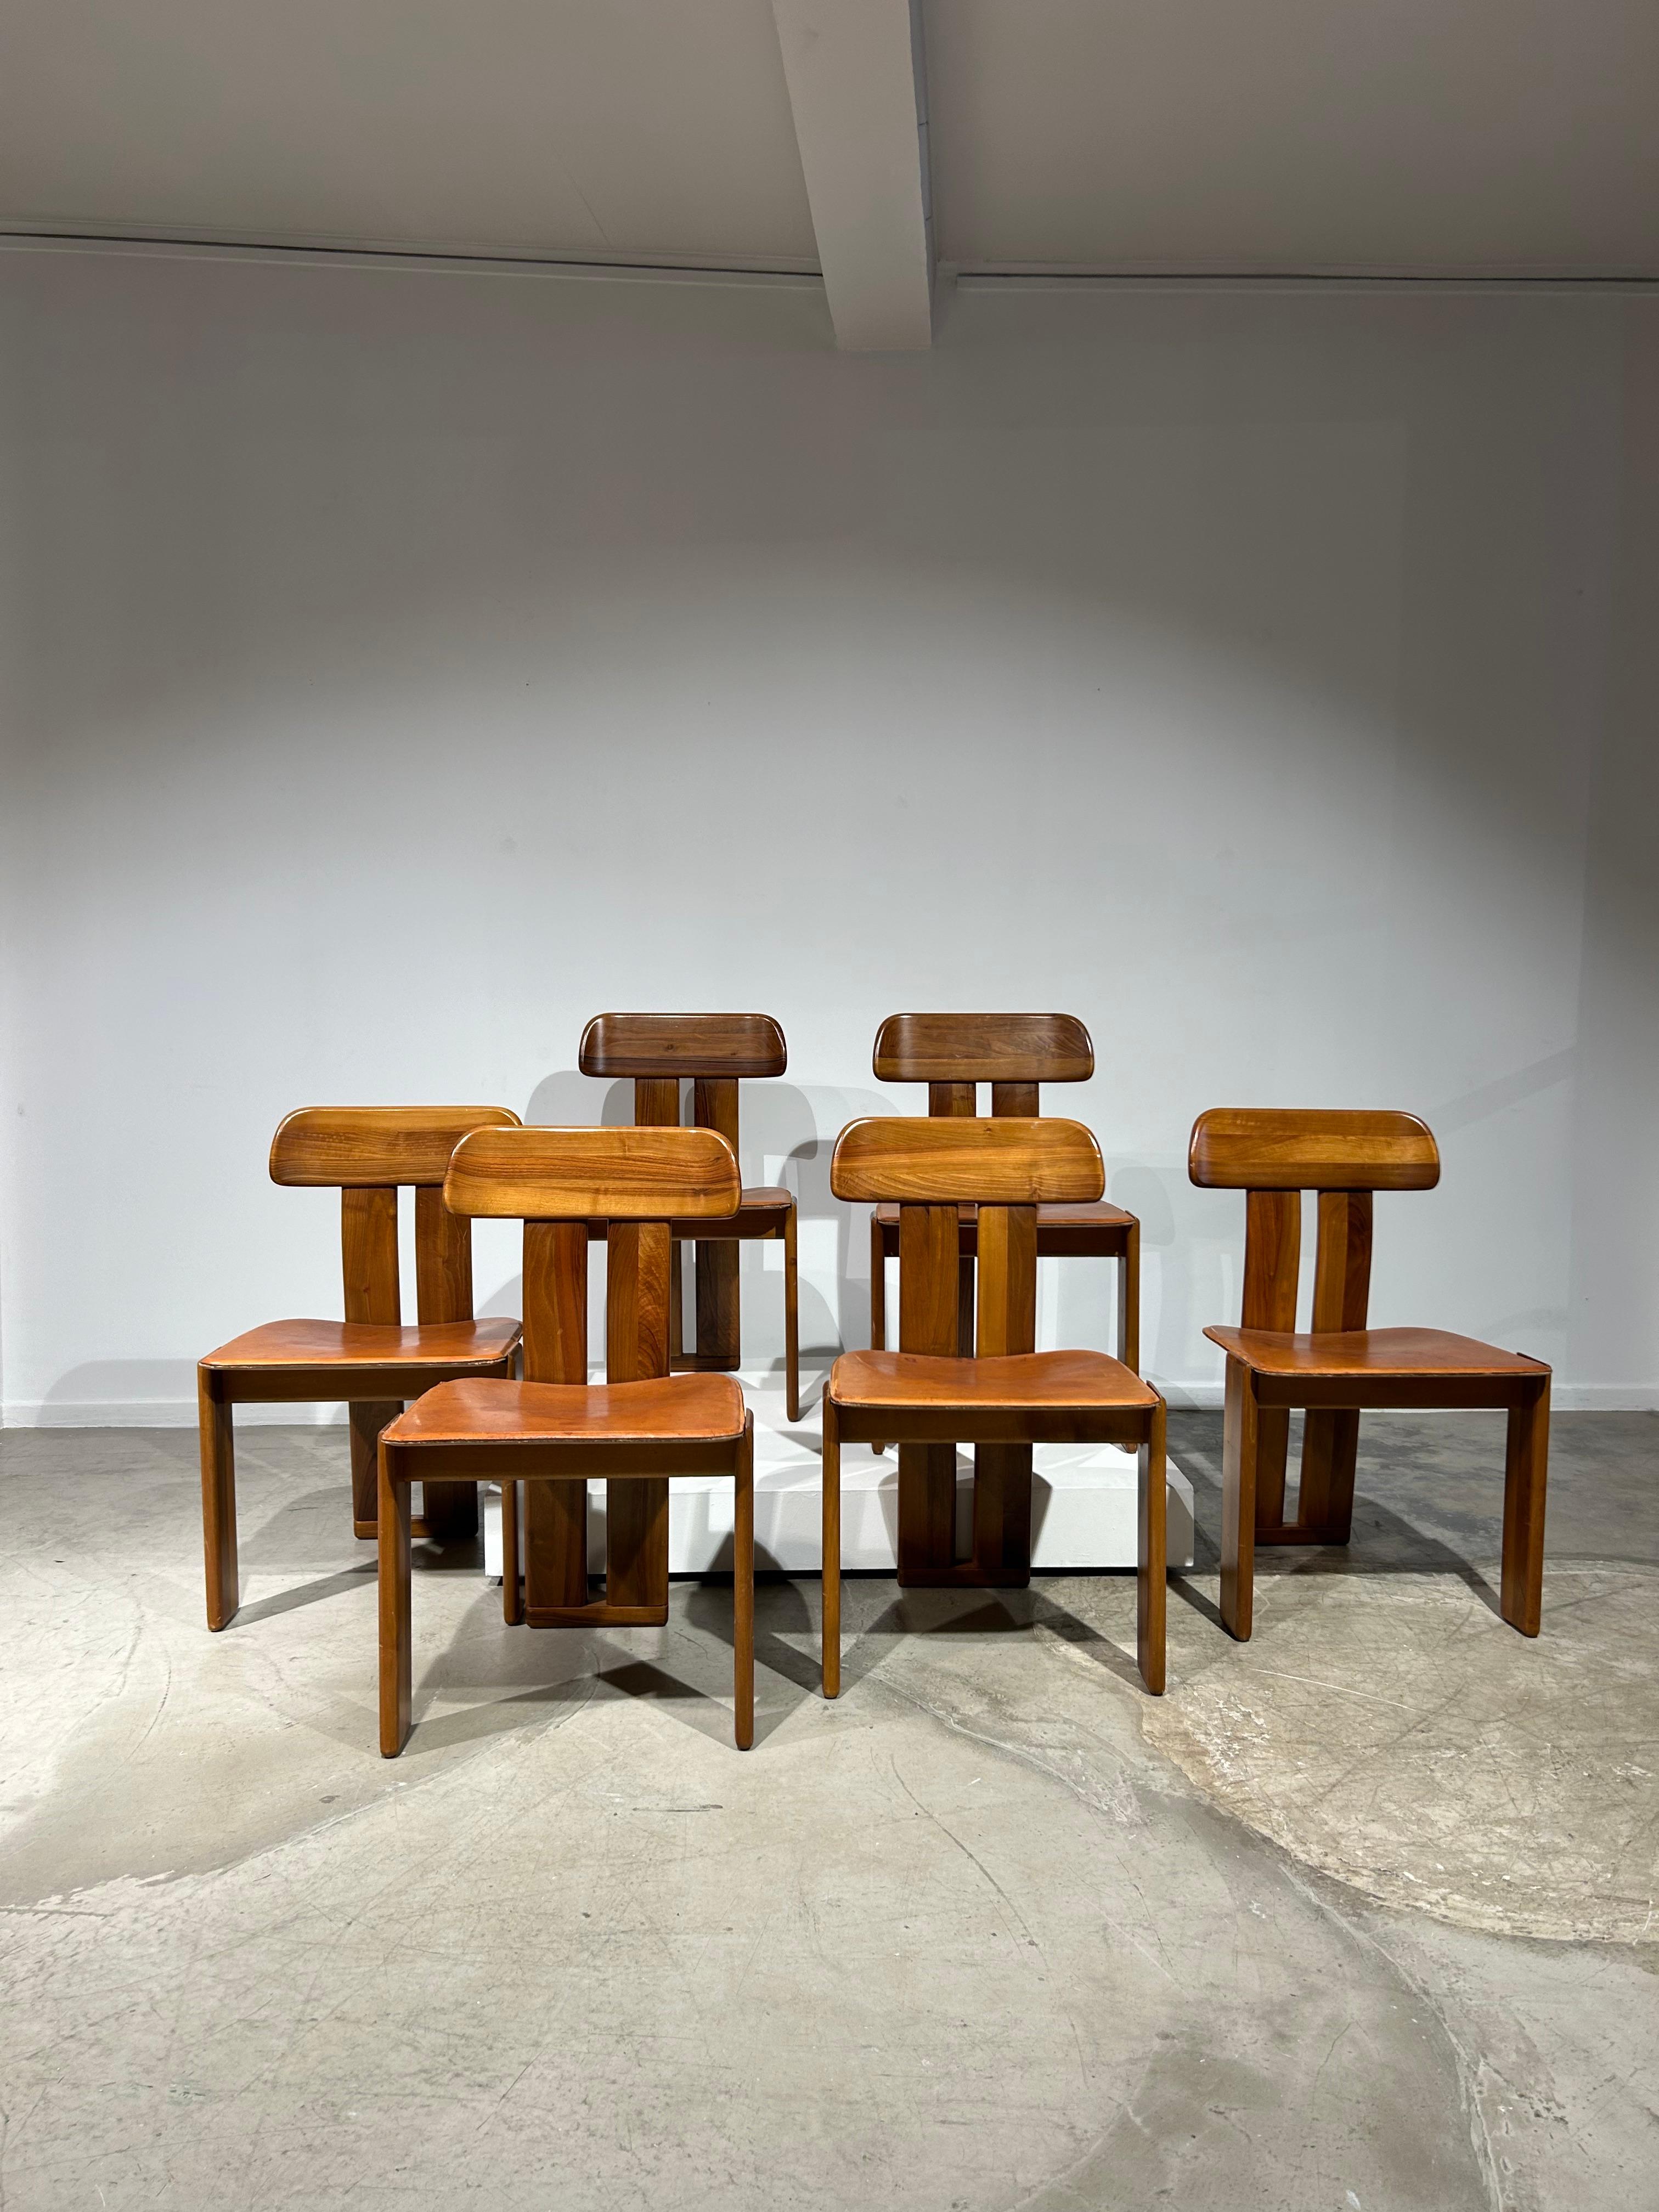 Ikonischer Satz von 6 seltenen Sapporo-Stühlen aus cognacfarbenem Leder von Mario Marenco für Mobil Girgi. Erstaunliche Patina!